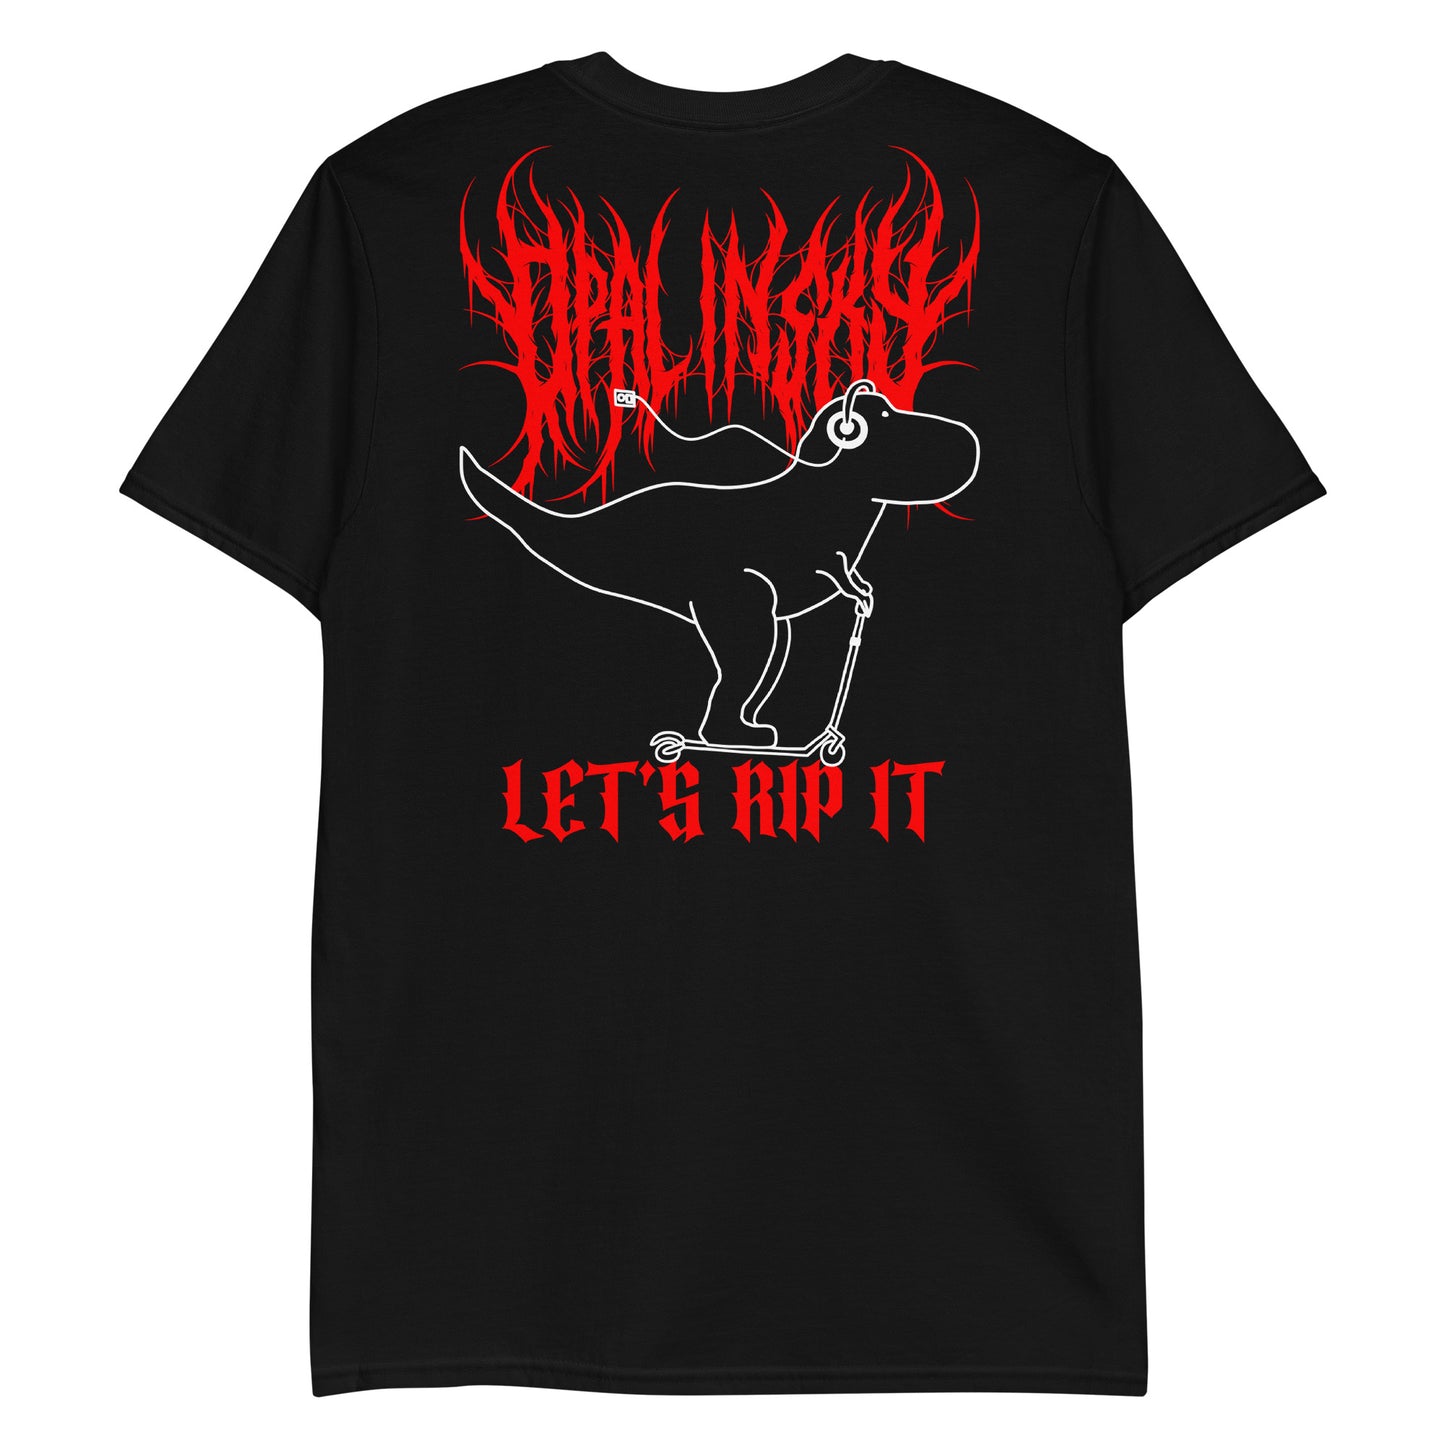 OPAL IN SKY "Let's Rip It Dino" Unisex T-Shirt